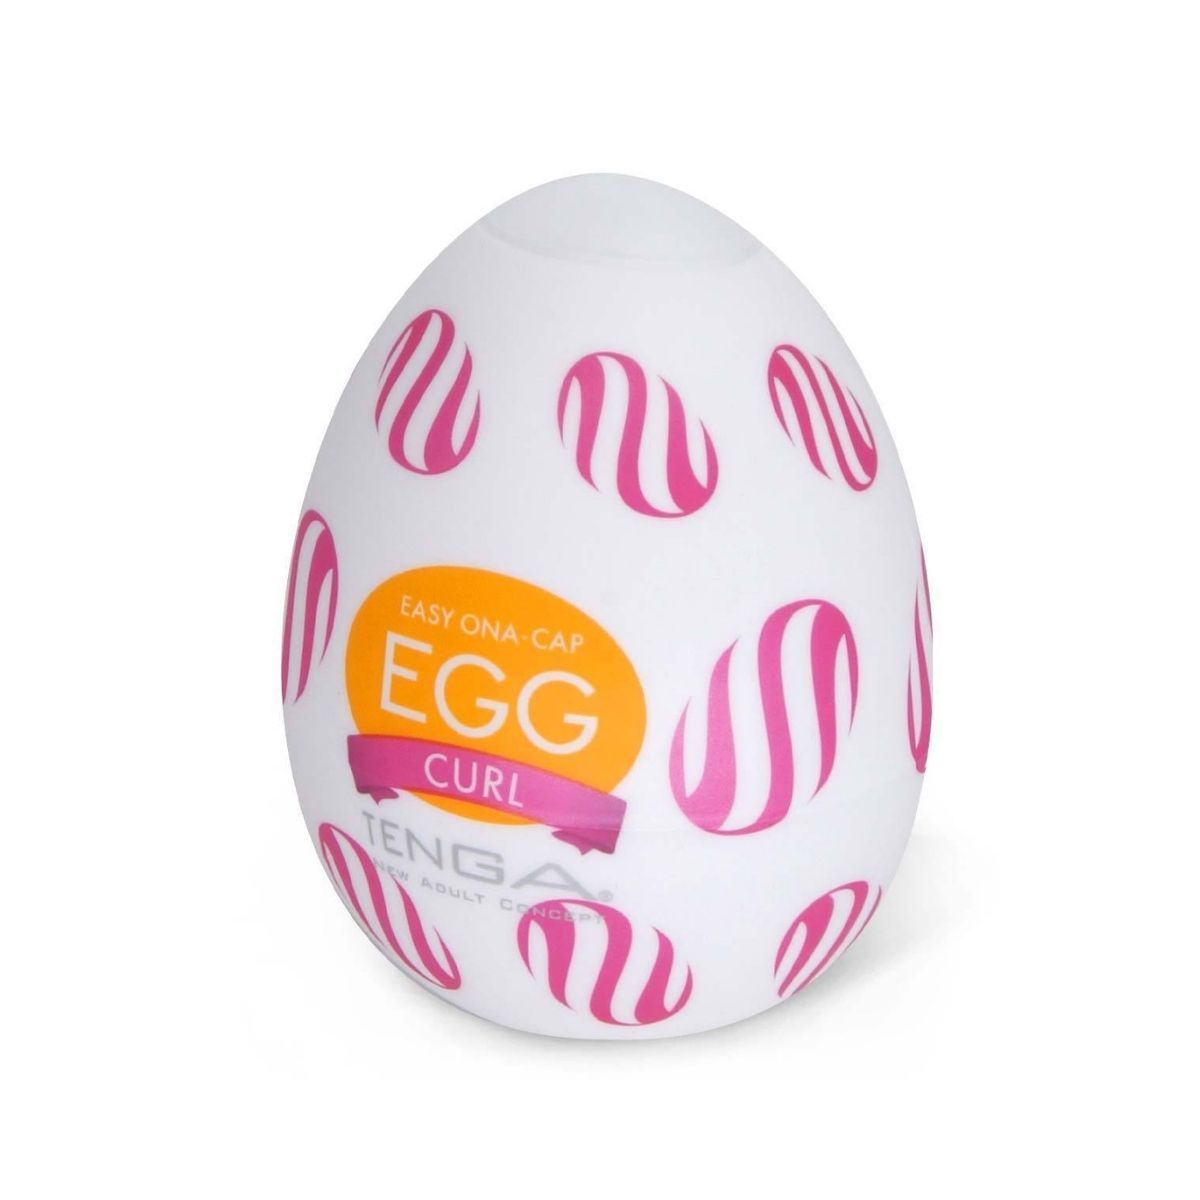 TENGA Egg Curl 捲動飛機蛋 飛機蛋 購買